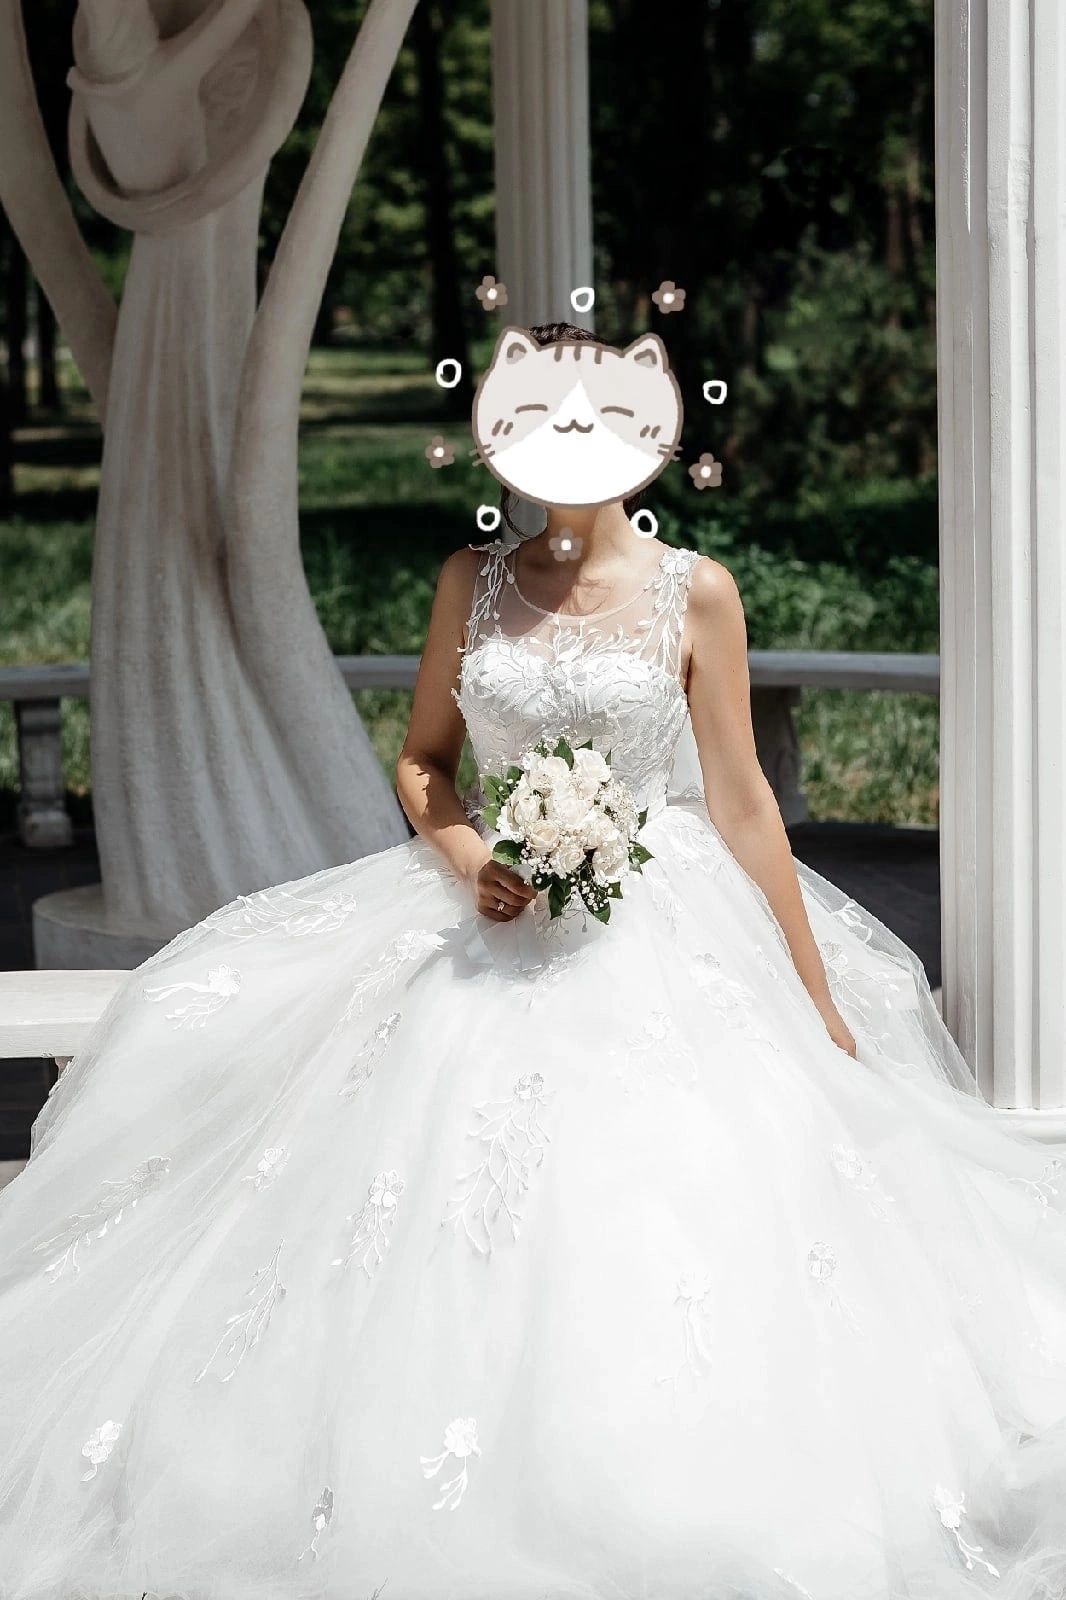 Свадебное платье, 44-46